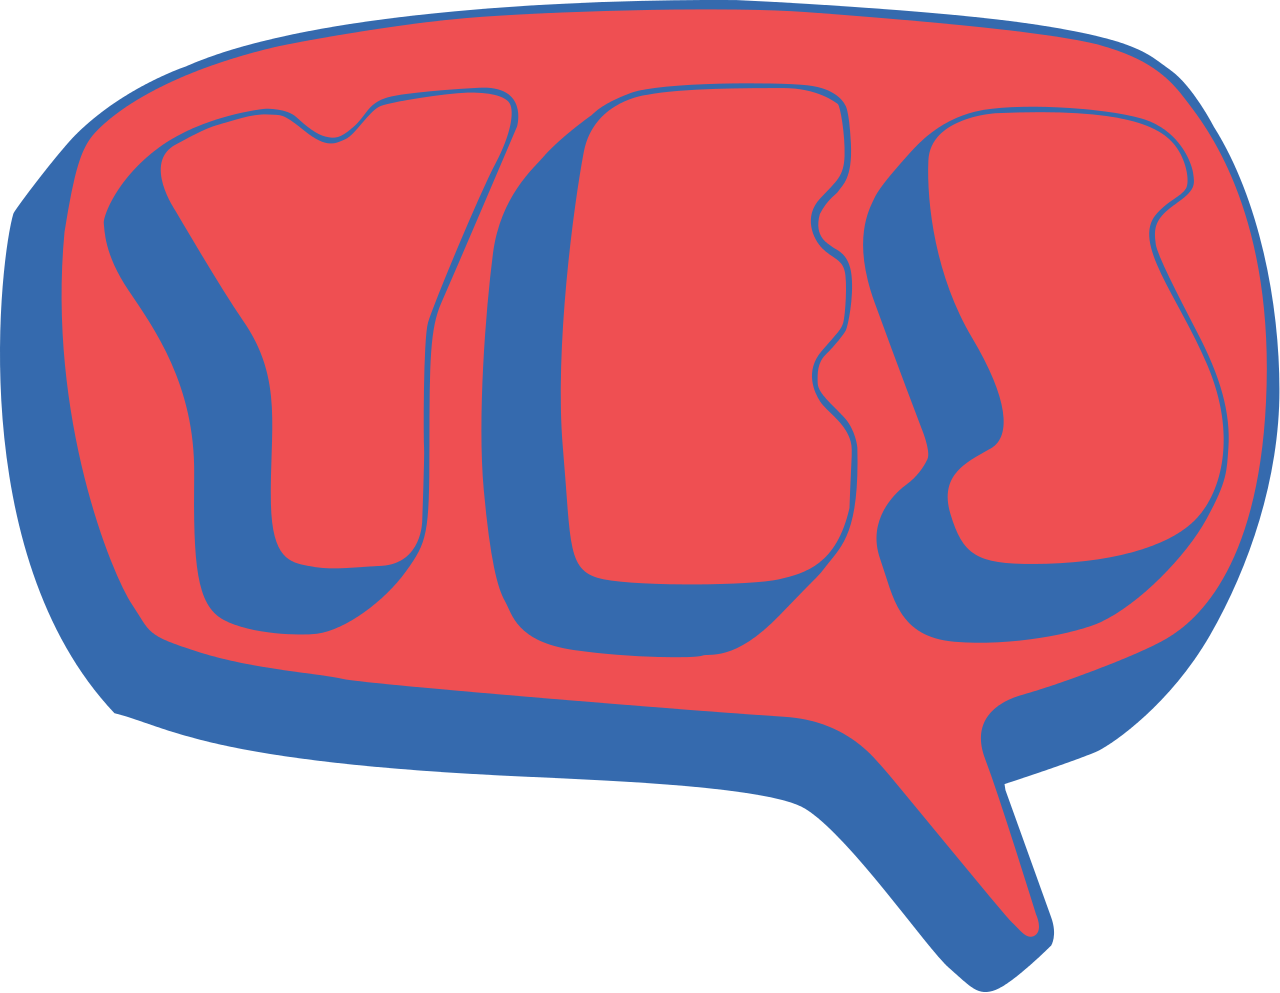 Yes Logo - File:Yes 1969 logo.svg - Wikimedia Commons